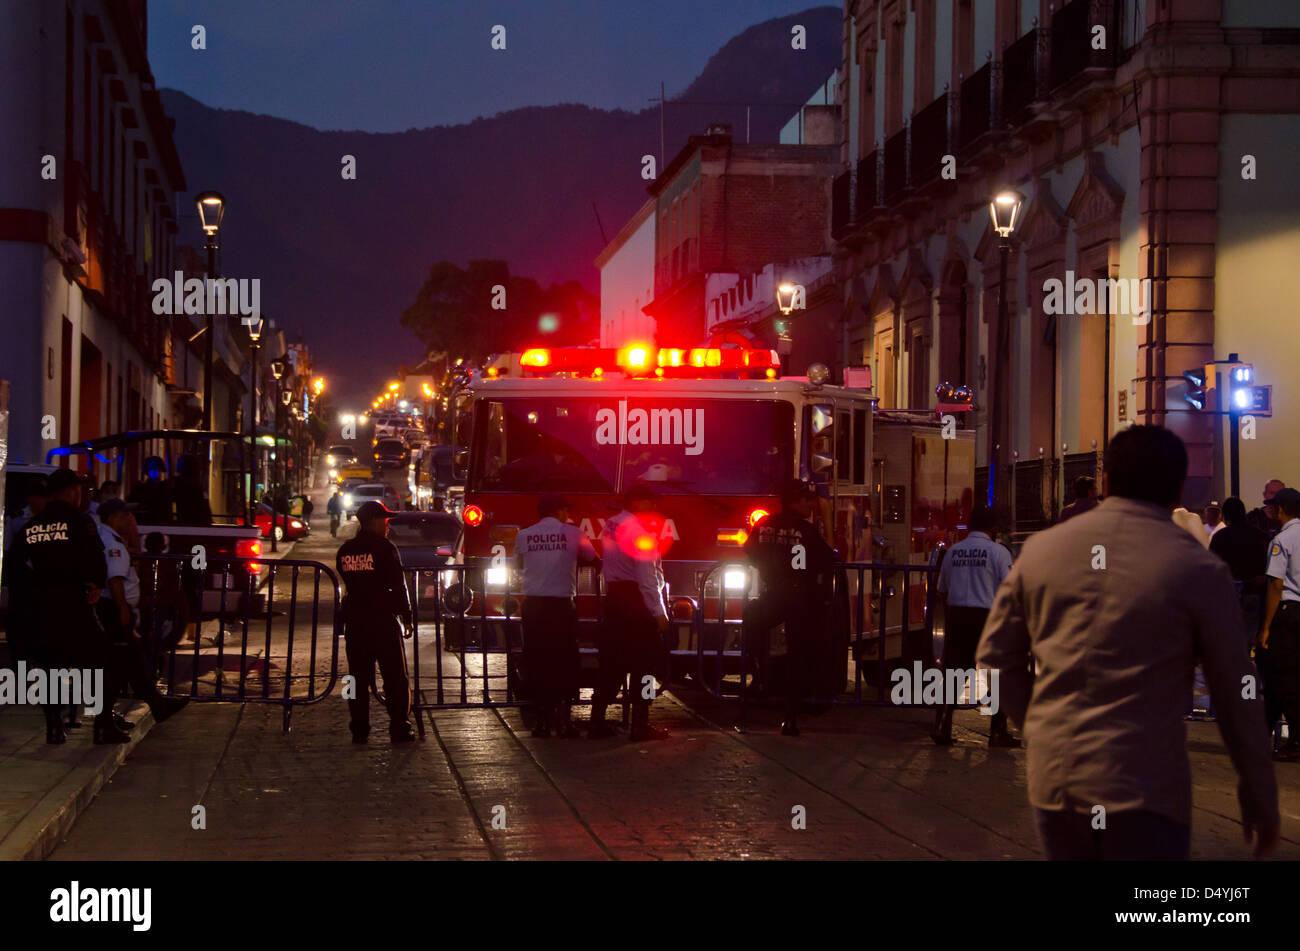 Misure di sicurezza per la Noche de festival Rabanos comprendono traffico barriere, ausiliari di polizia, polizia di stato, e firetrucks. Foto Stock